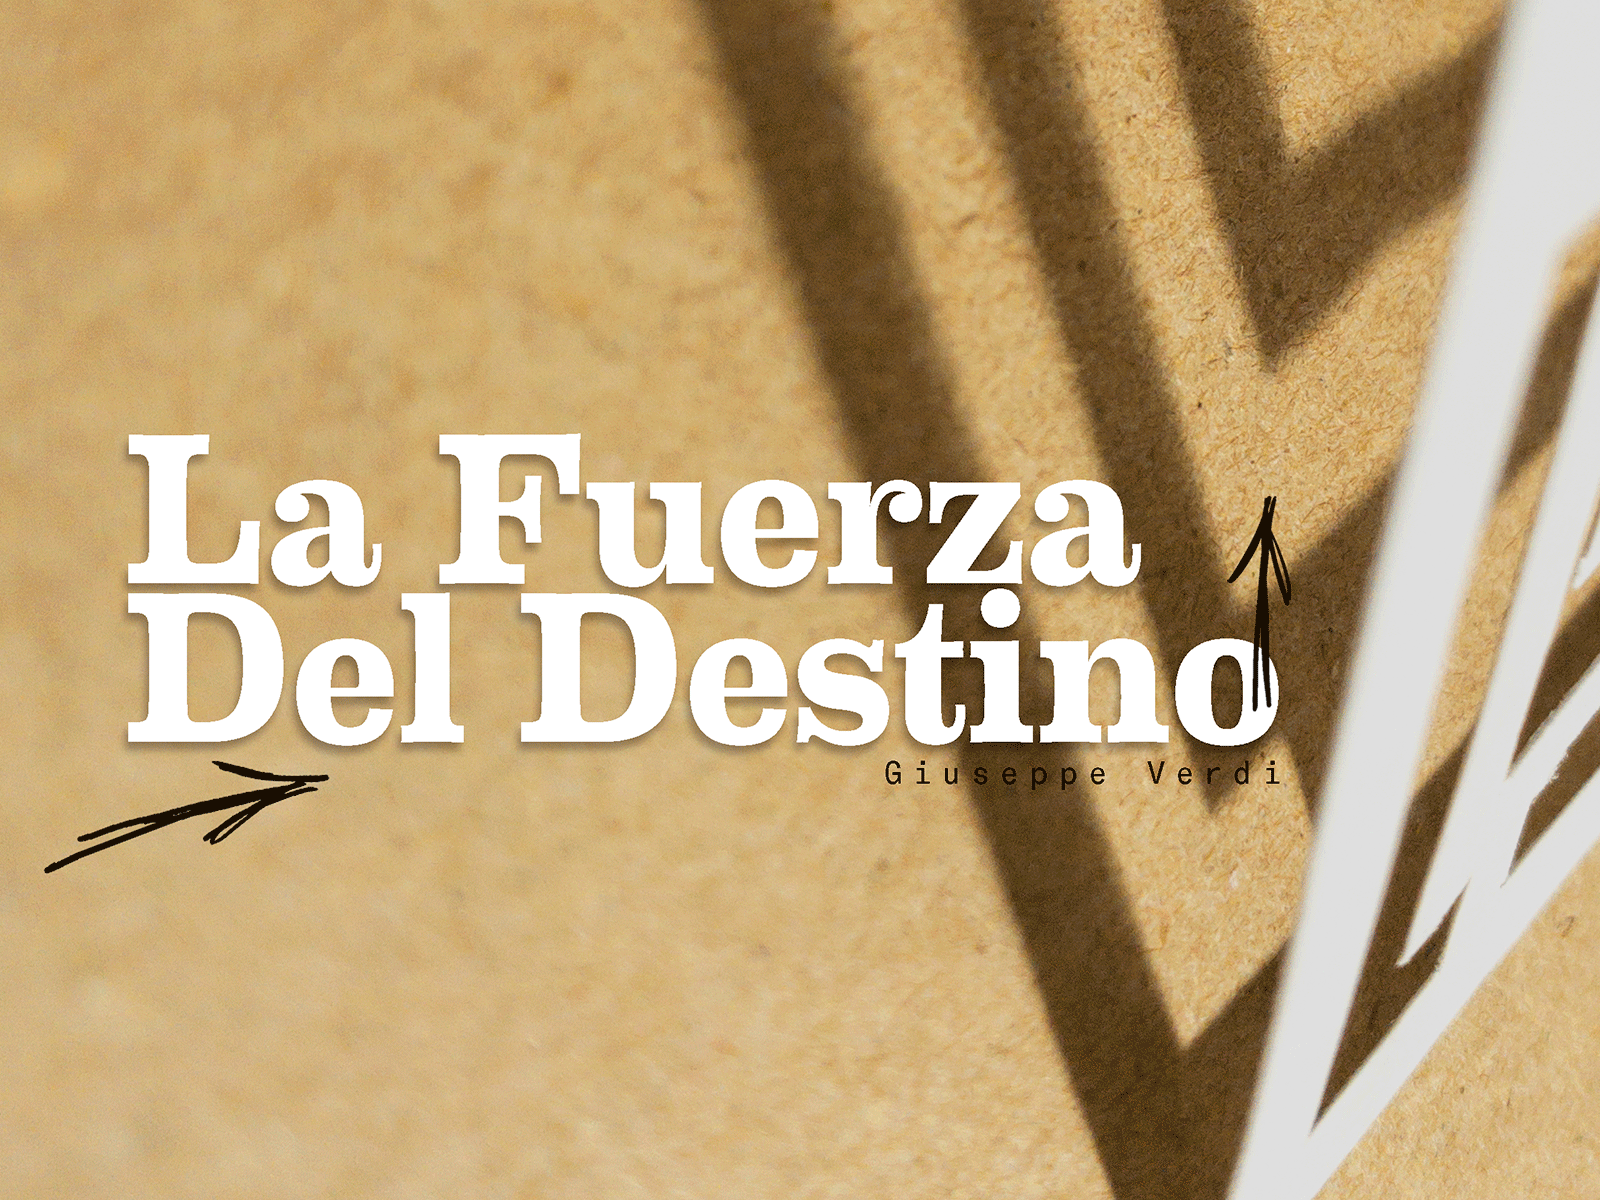 La Fuerza Del Destino Giuseppe Verdi artdirector design graphicdesign laberinto labyrinth photograhy photoshop poster tickets